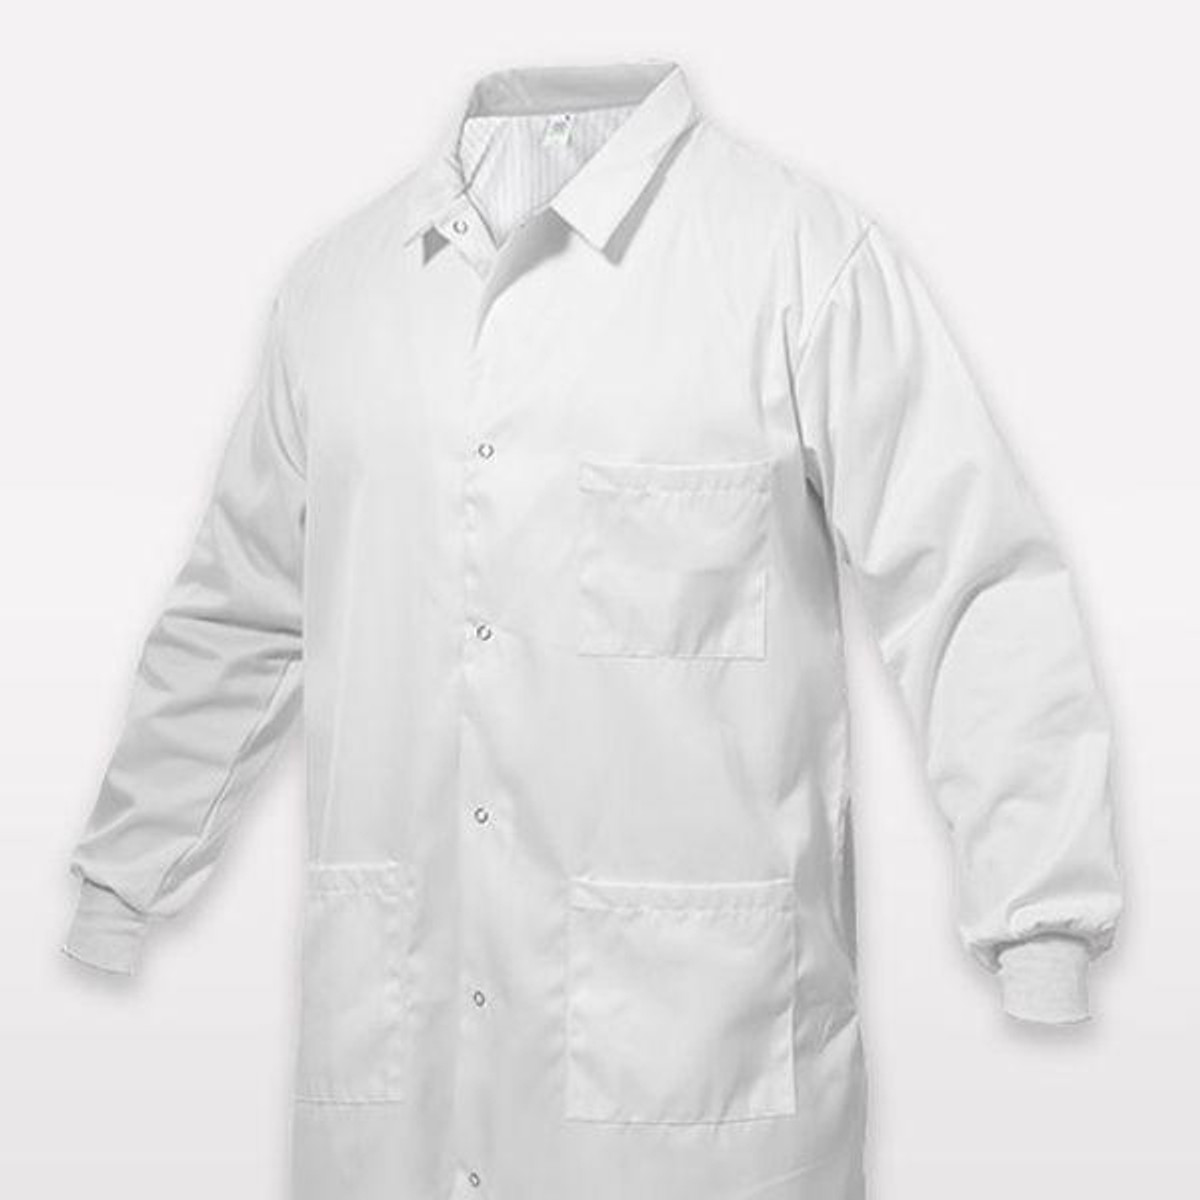 Standard Textile ComPel Lab Coat (S) for Sale